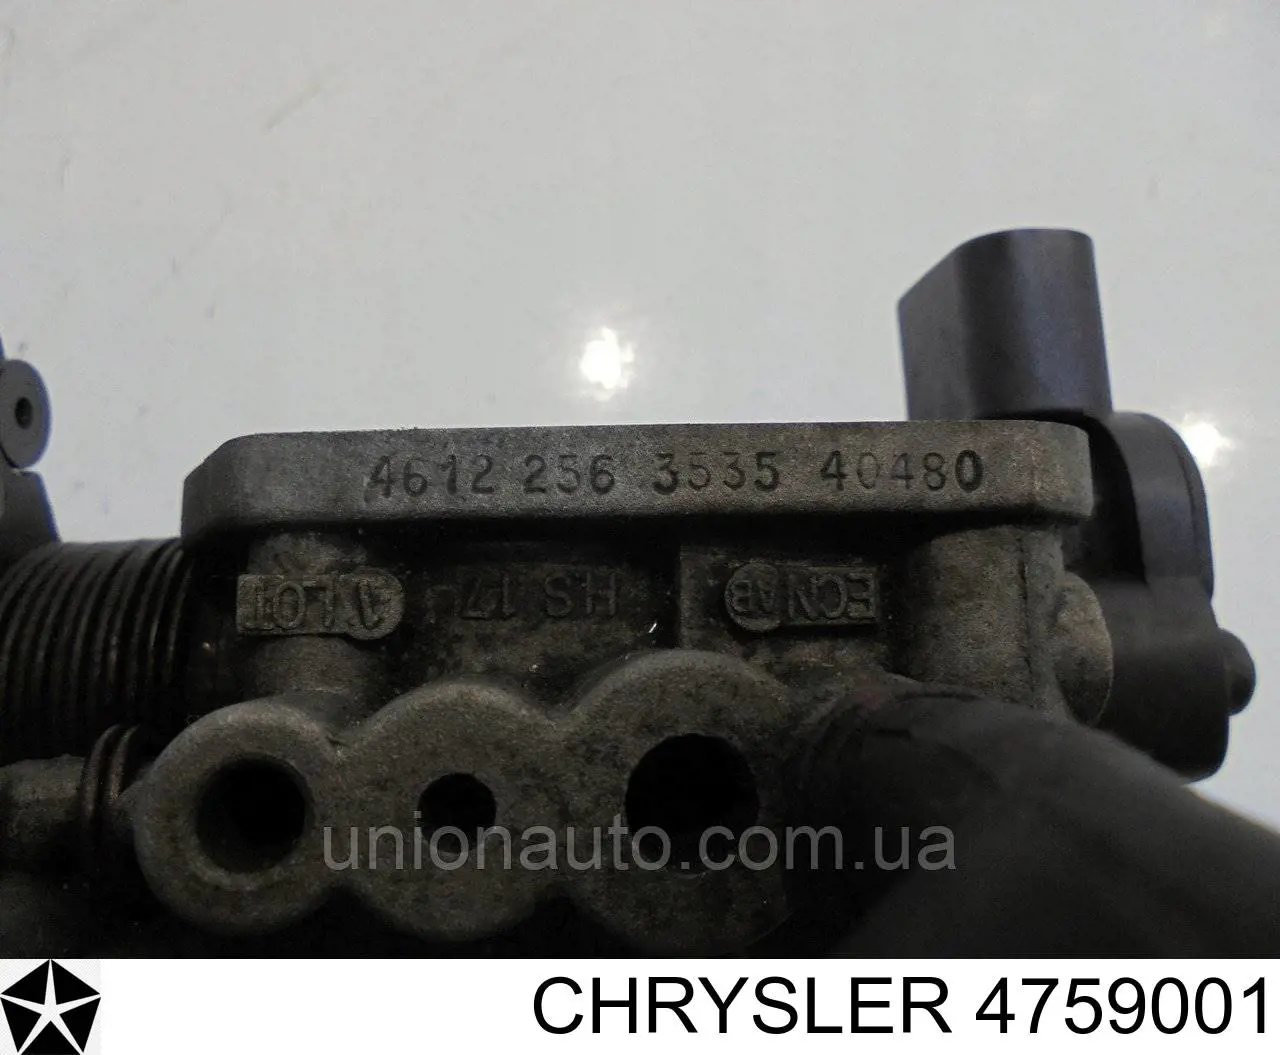 4759001 Chrysler датчик положения дроссельной заслонки (потенциометр)